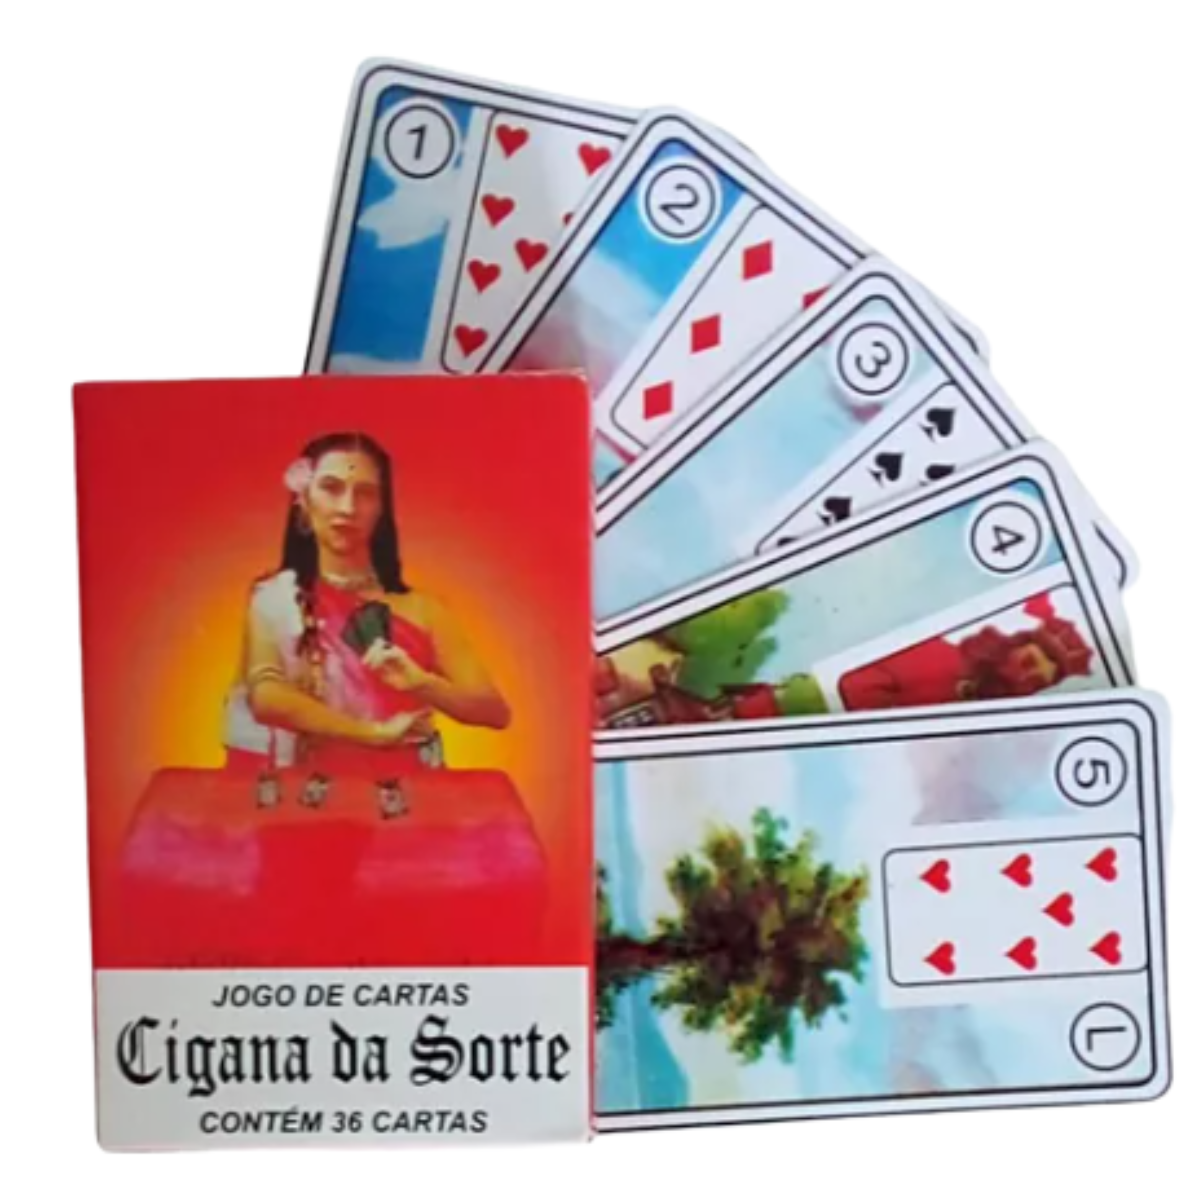 Cartas ciganas: o que são, significado e como jogar